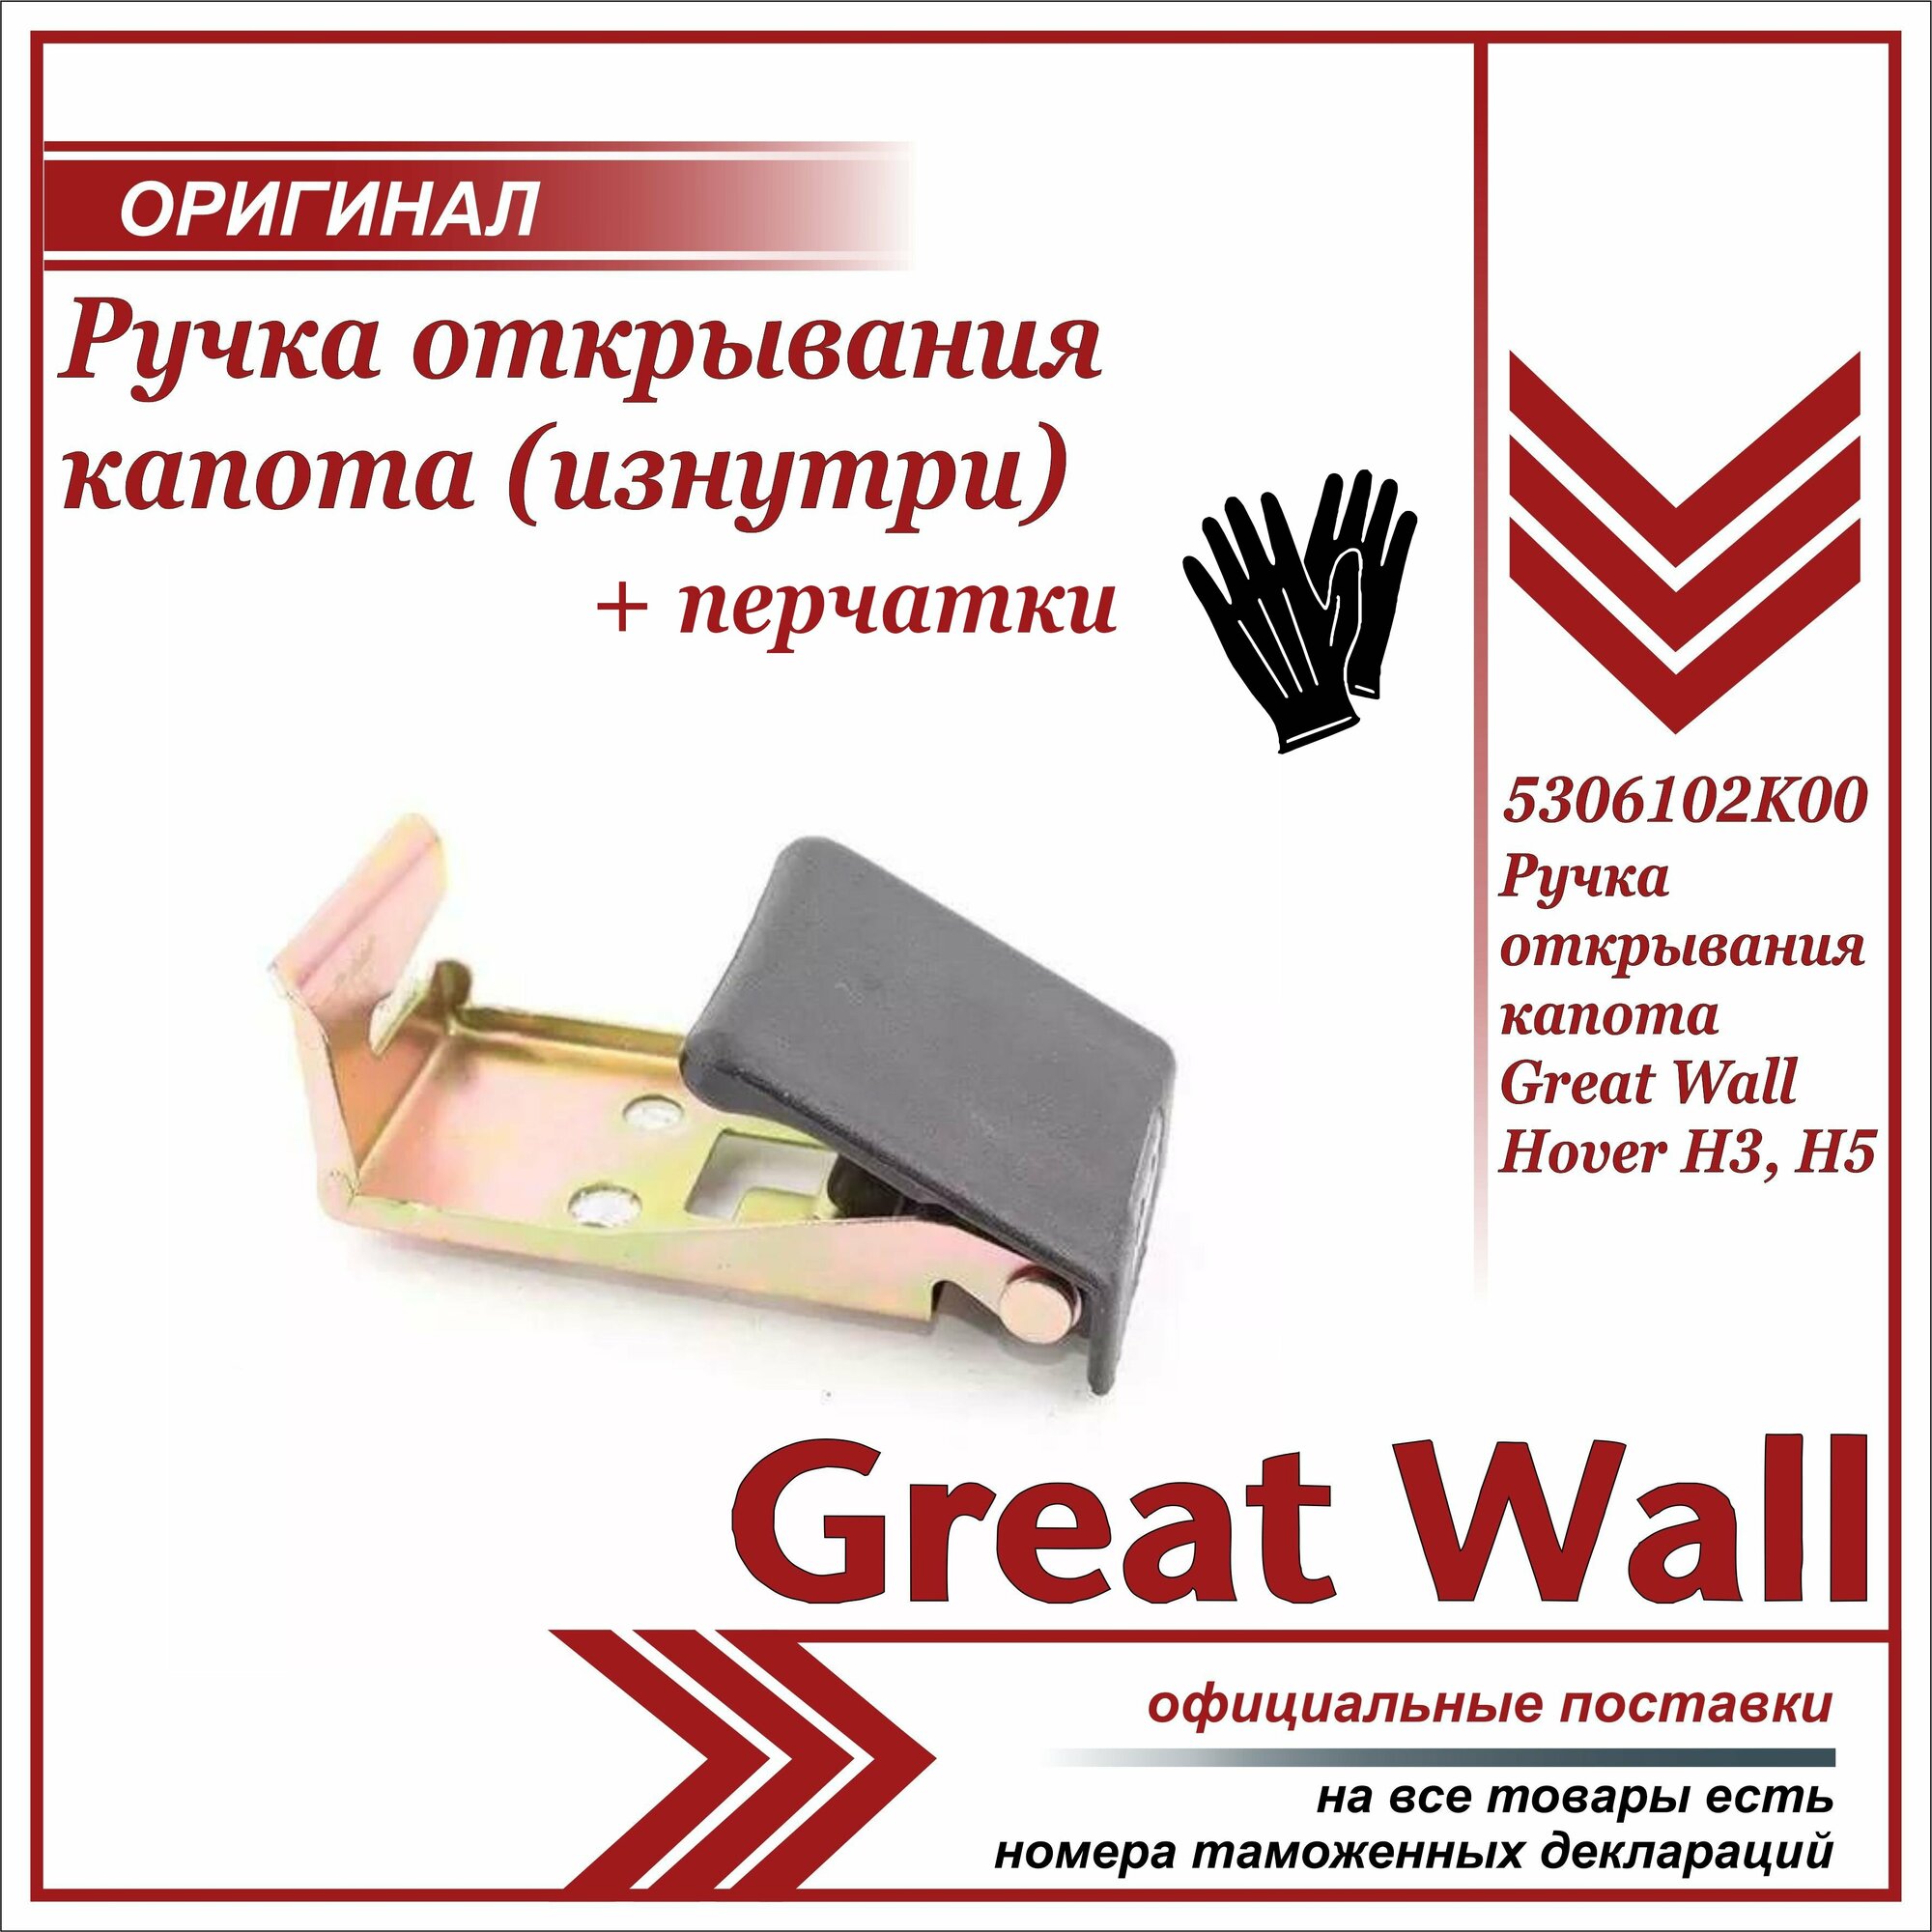 Ручка открывания капота Ховер Н3 H5, Great Wall Hover H3, H5 + пара перчаток в комплекте